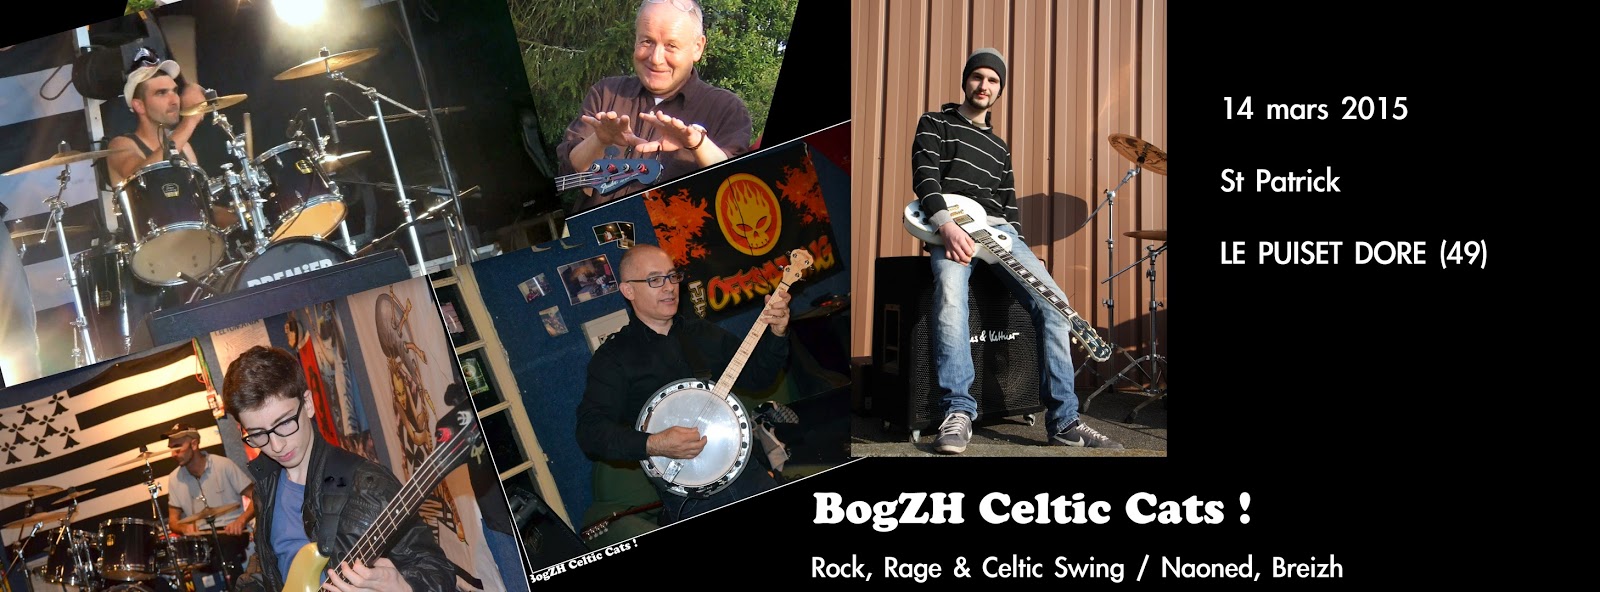 Fête de la Saint Patrick BogZH Celtic Cats ! Rock celtique punk folk irish trad